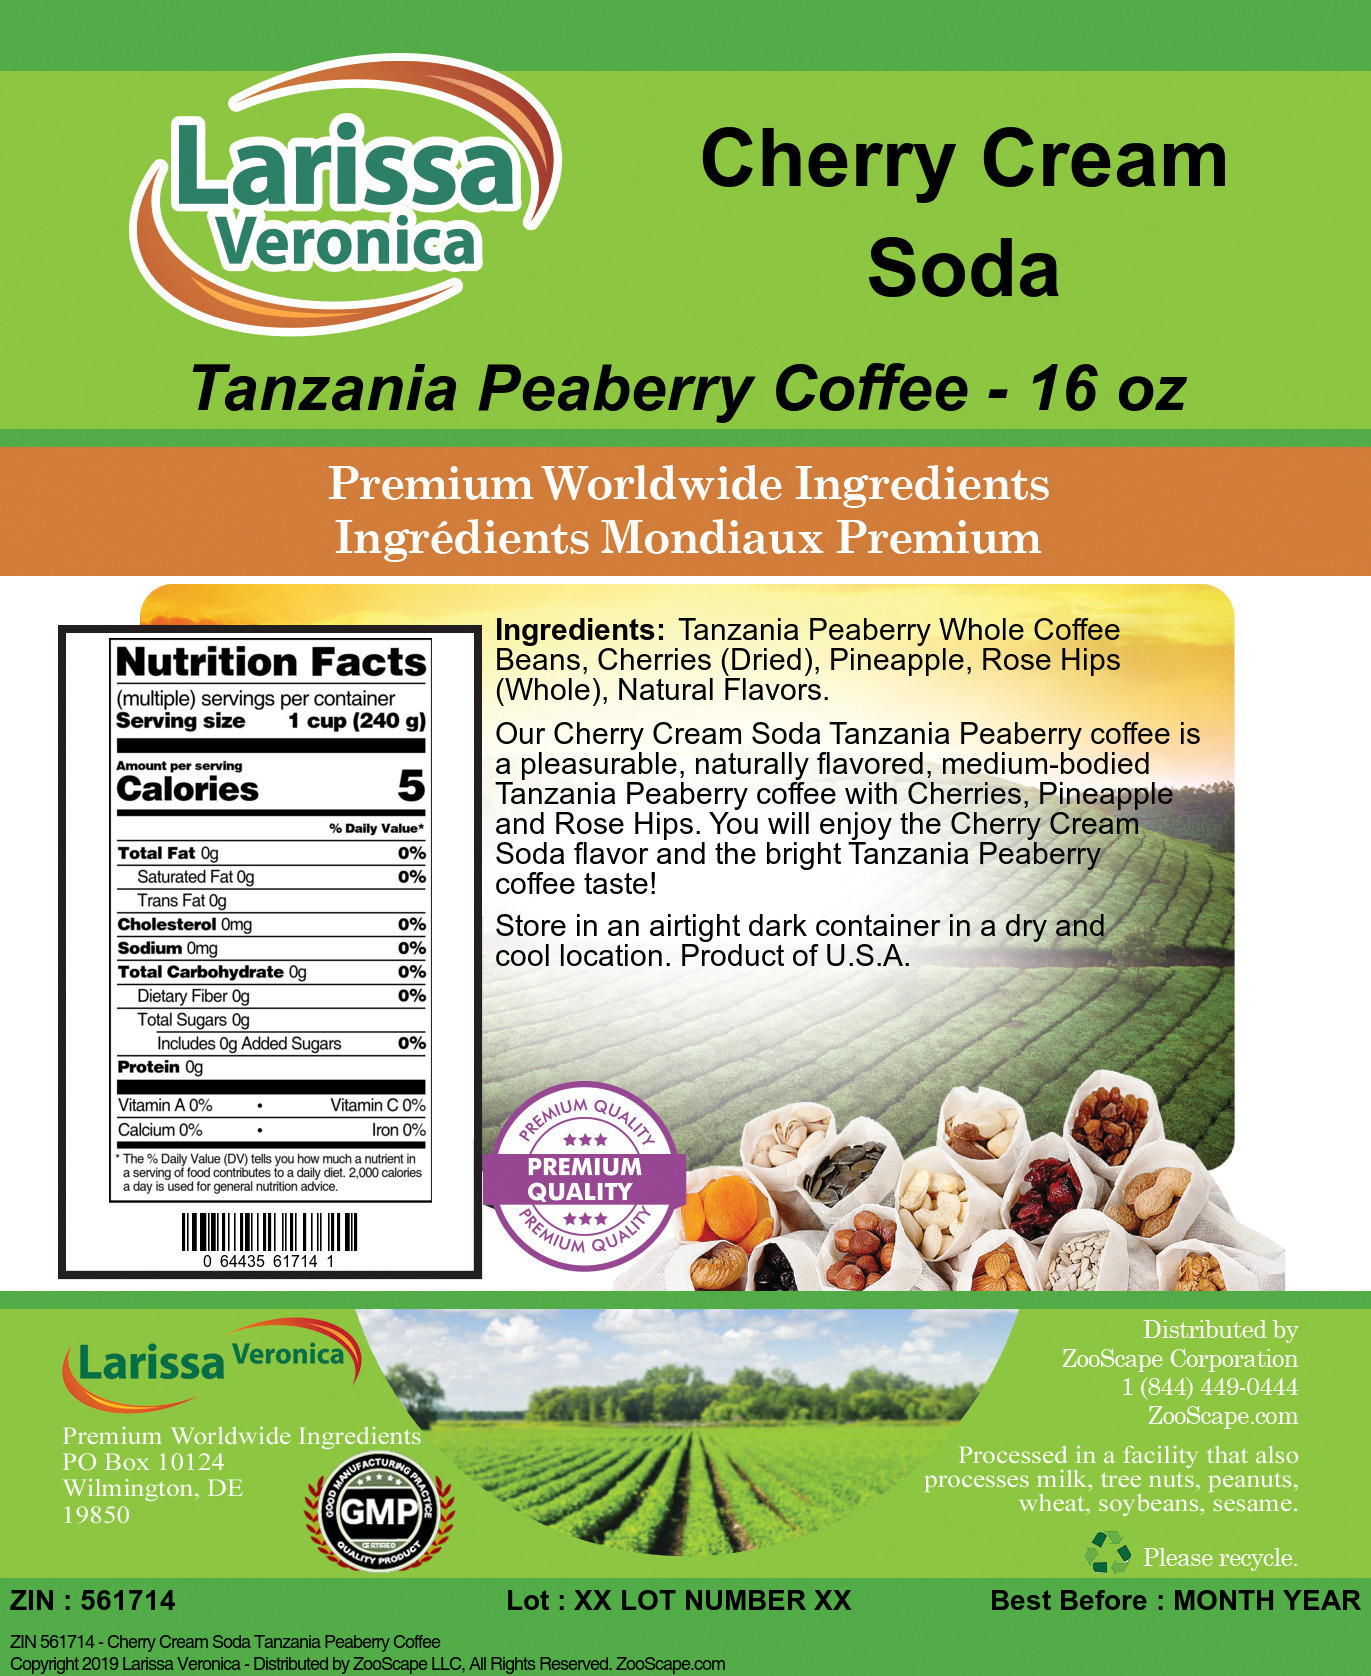 Cherry Cream Soda Tanzania Peaberry Coffee - Label